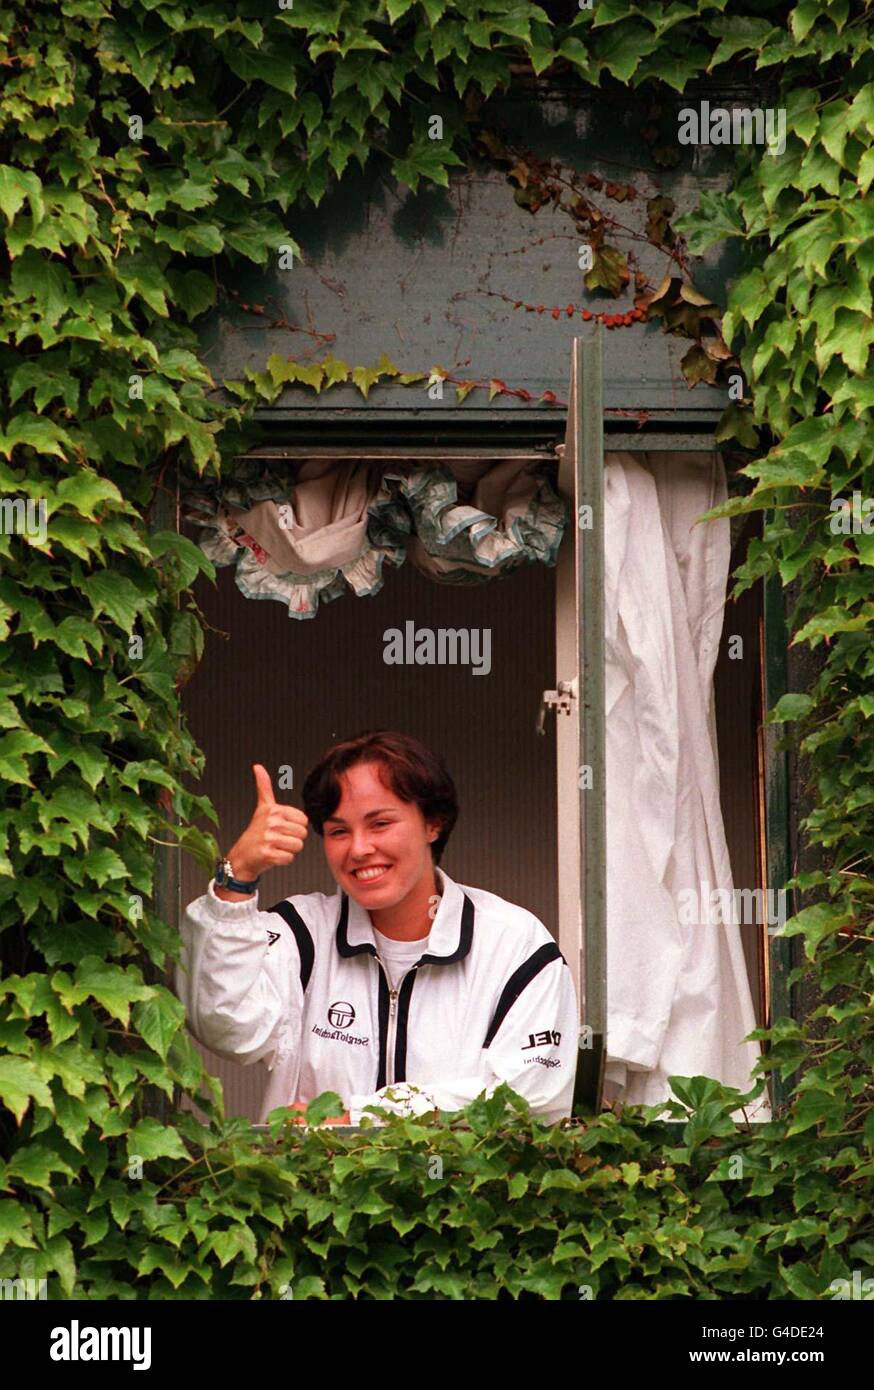 Martina Hingis, championne de Wimbledon en titre, donne les pouces aux adeptes lorsqu'elle est apparue à une fenêtre du complexe de Wimbledon lors d'une pause dans le jeu aujourd'hui (vendredi). Photo PA. Banque D'Images